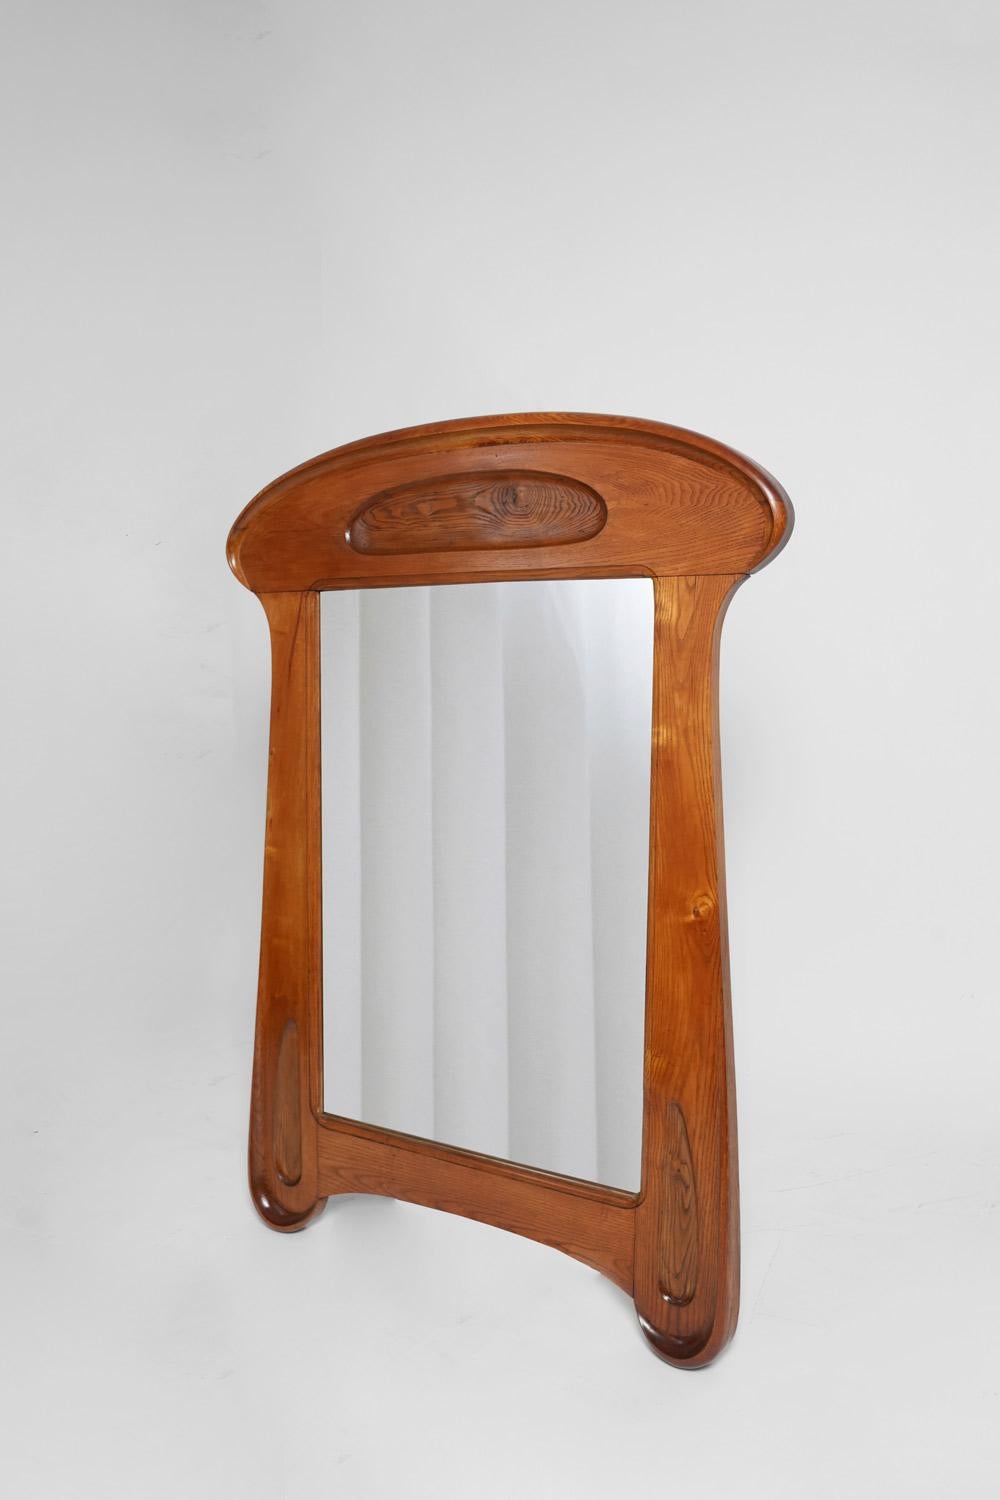 Spiegel aus Holz. Frankreich, 1920.